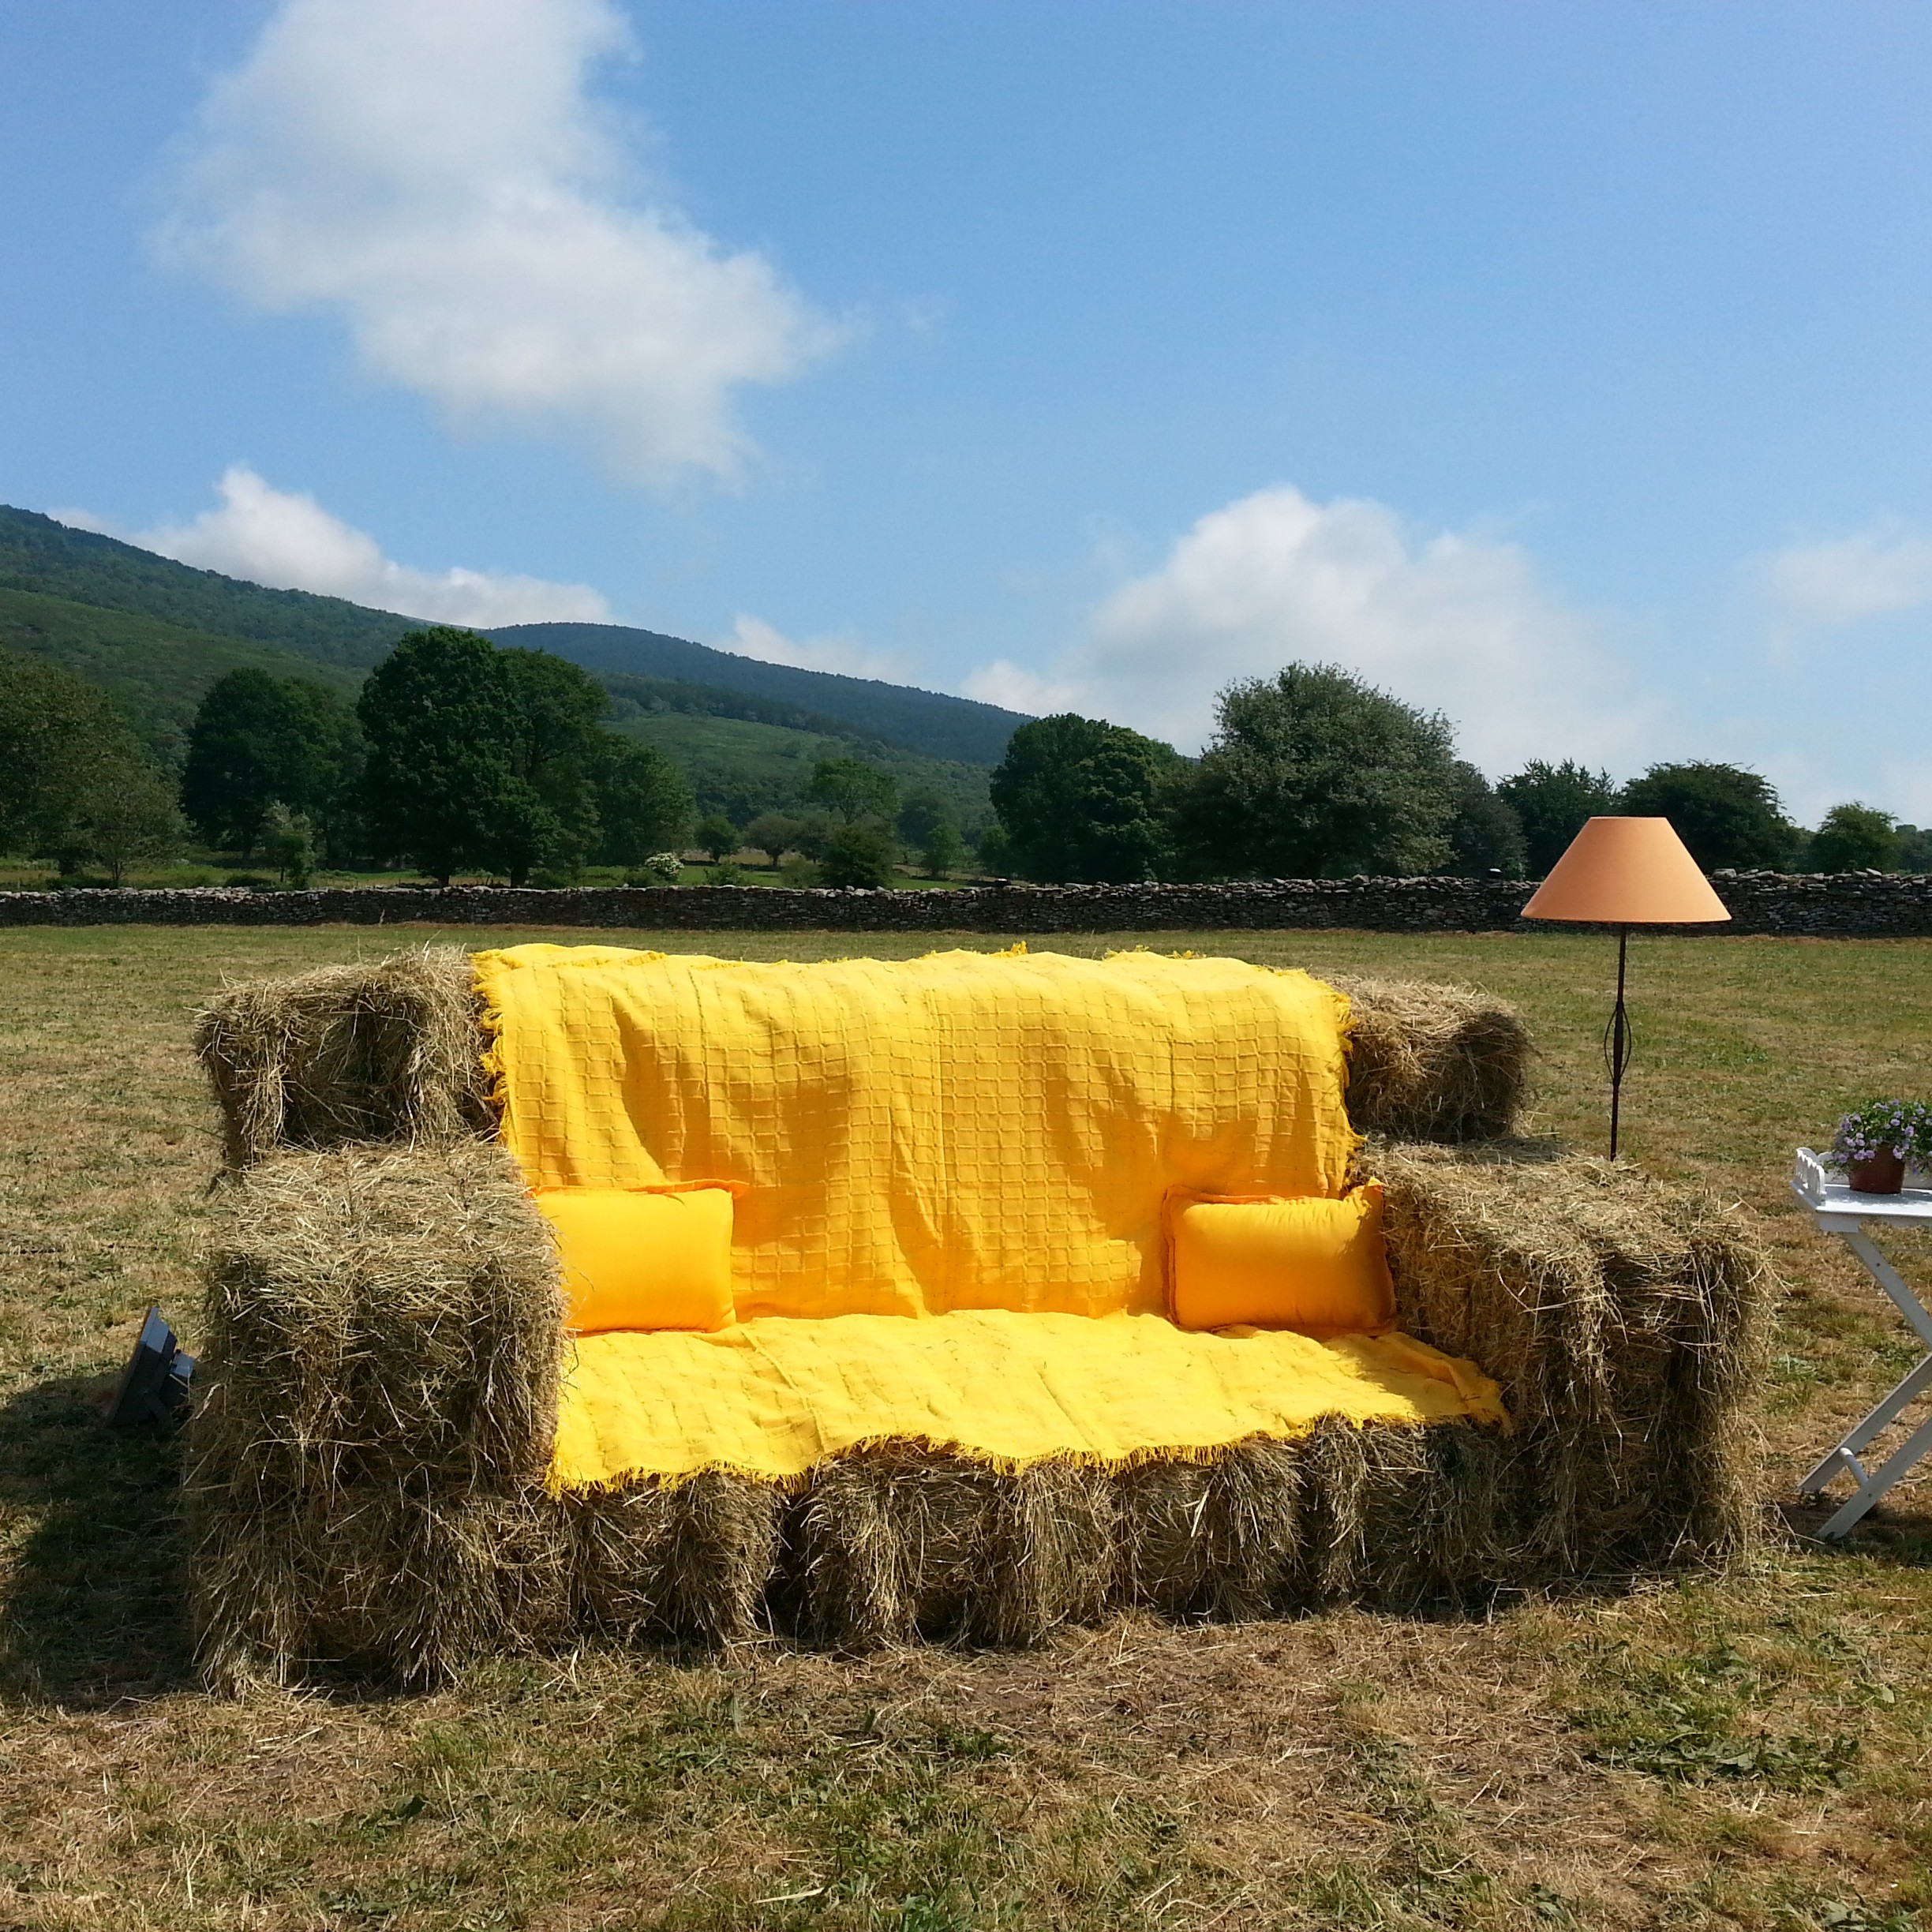 el sofa amarillo boda rustica burgos (3)